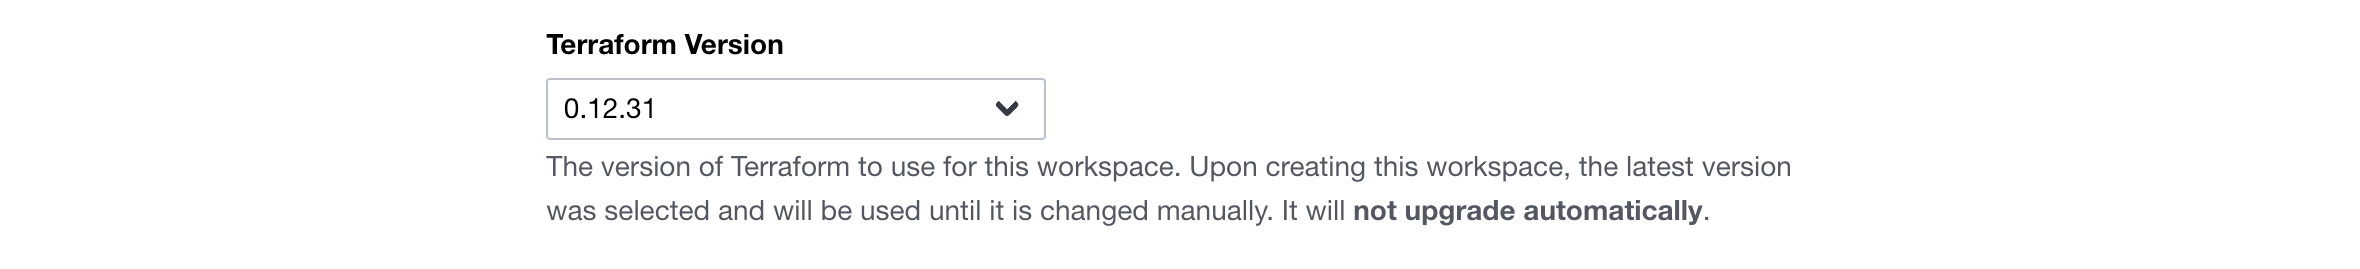 Configure the Workspace's Terraform version